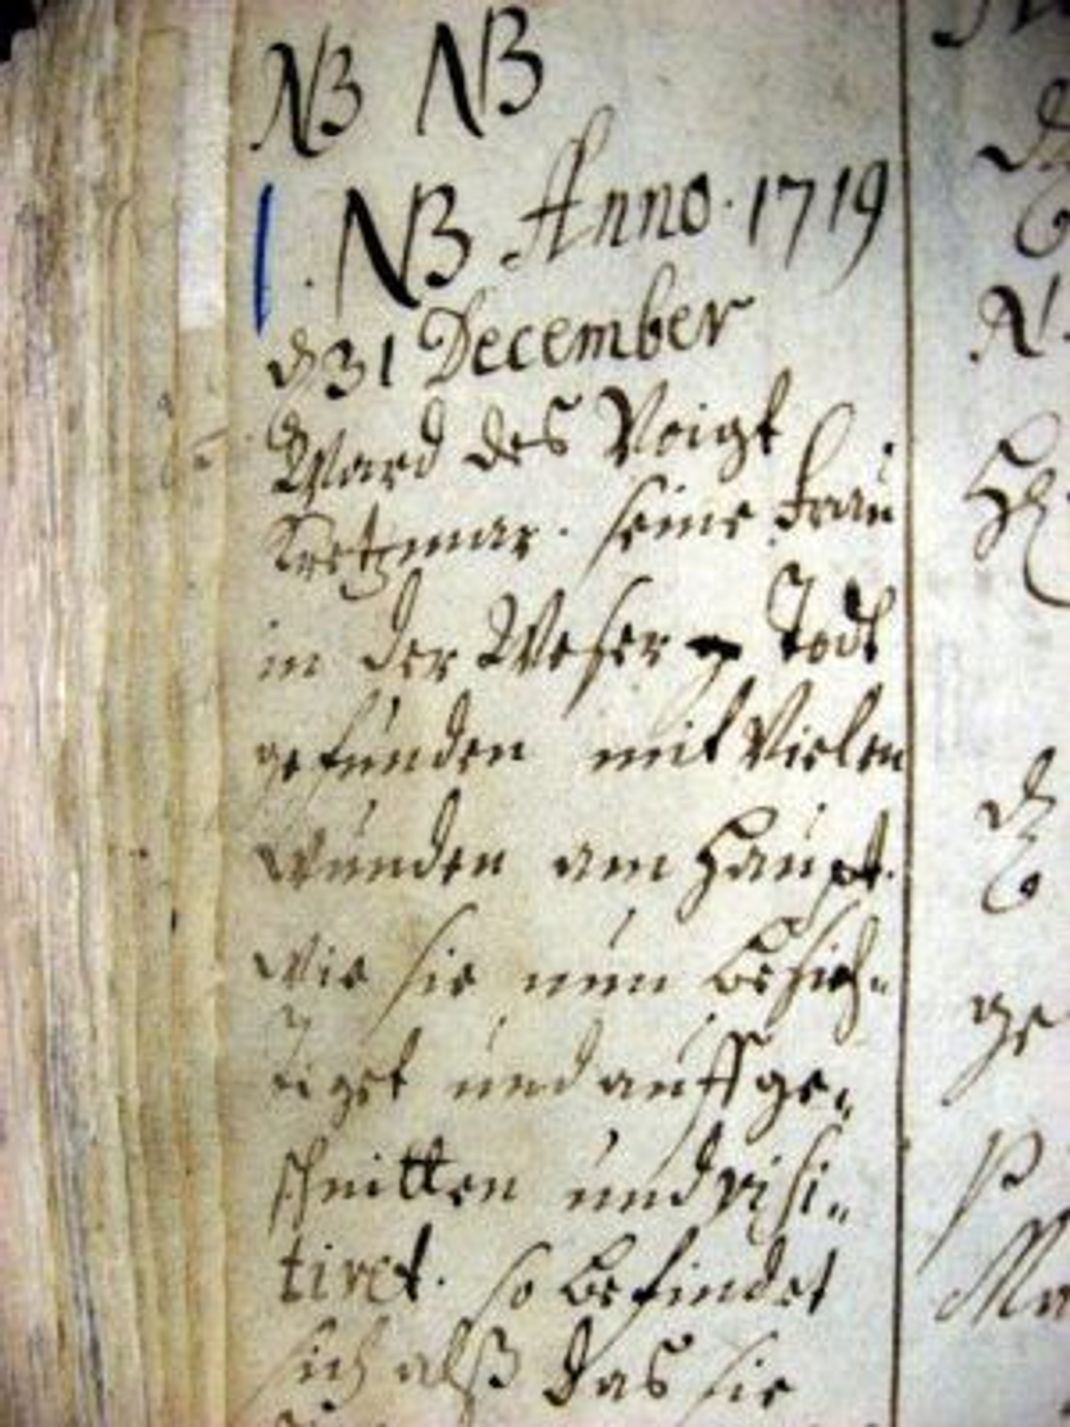 Auszug des Eintrags zum Mord in Windheim 1719 im Kirchenbuch.